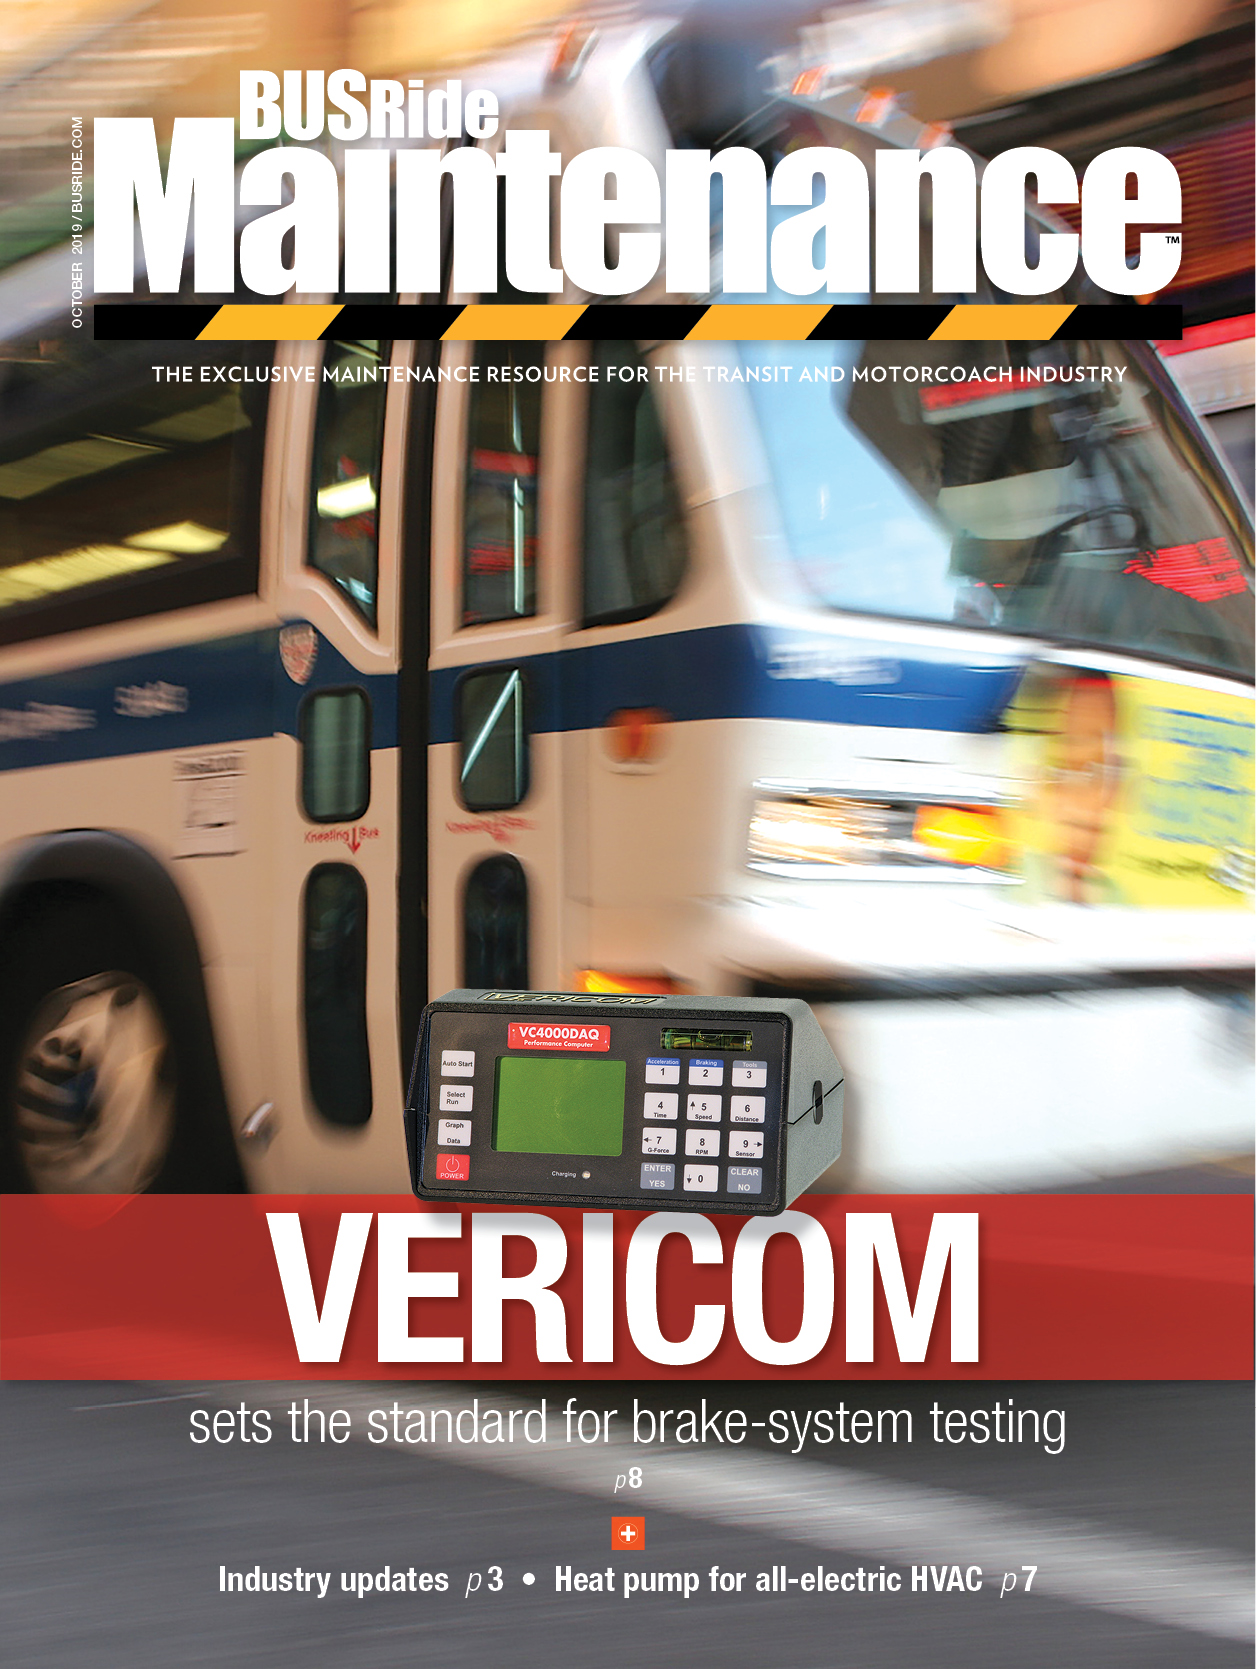 Vericom sets standard for brake-system testing